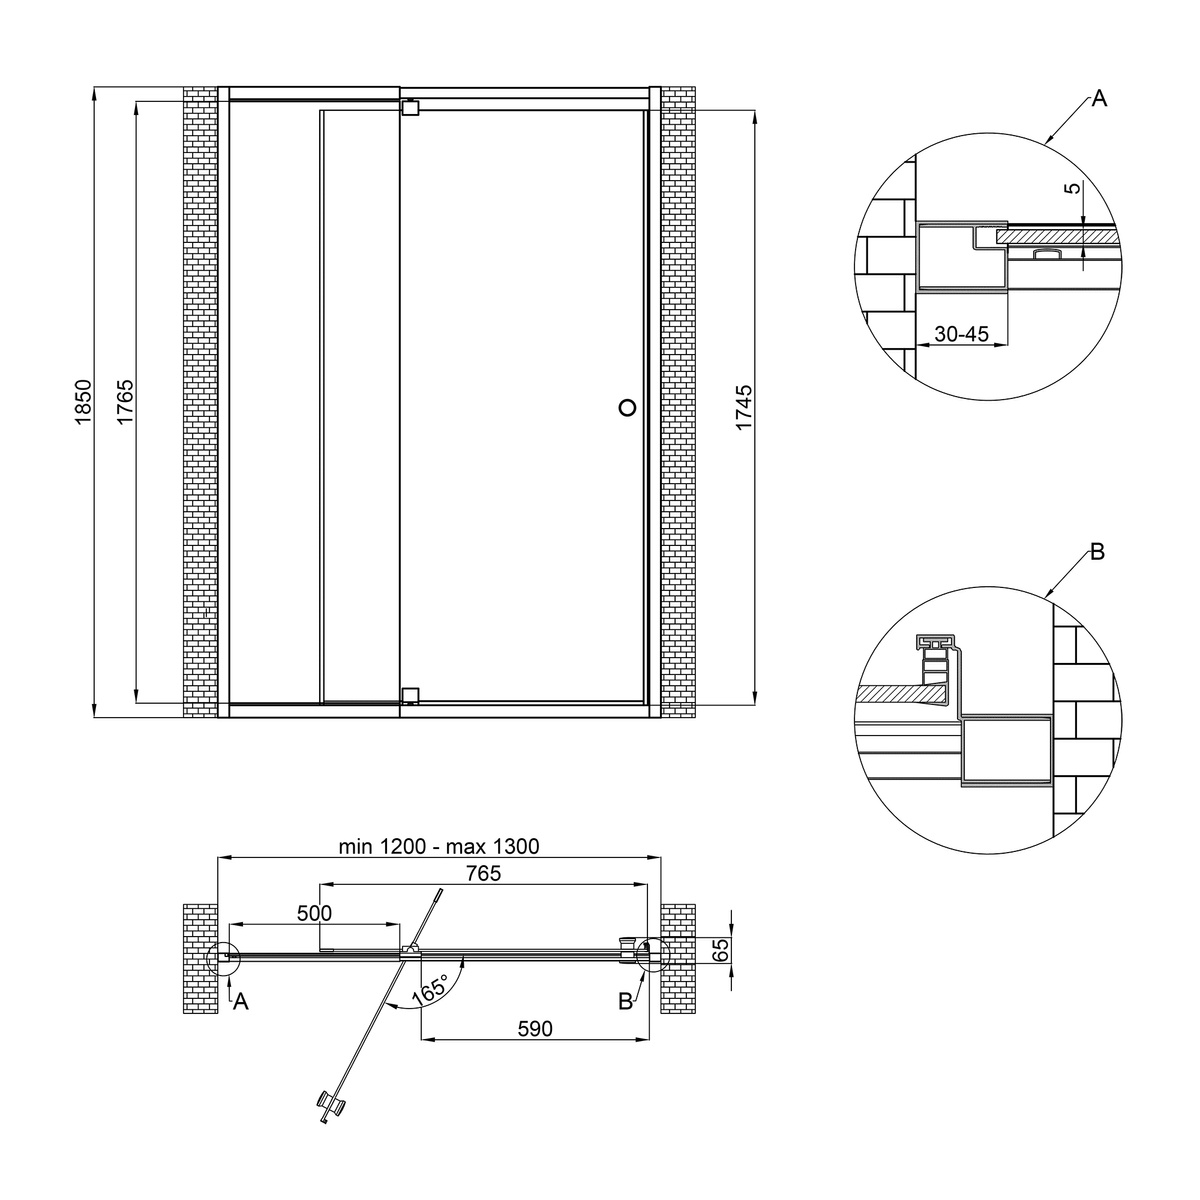 Двері скляні для душової ніші універсальні розпашні двосекційні Q-TAP Pisces 185x130см матове скло 5мм профіль білий PISWHI201213CP5